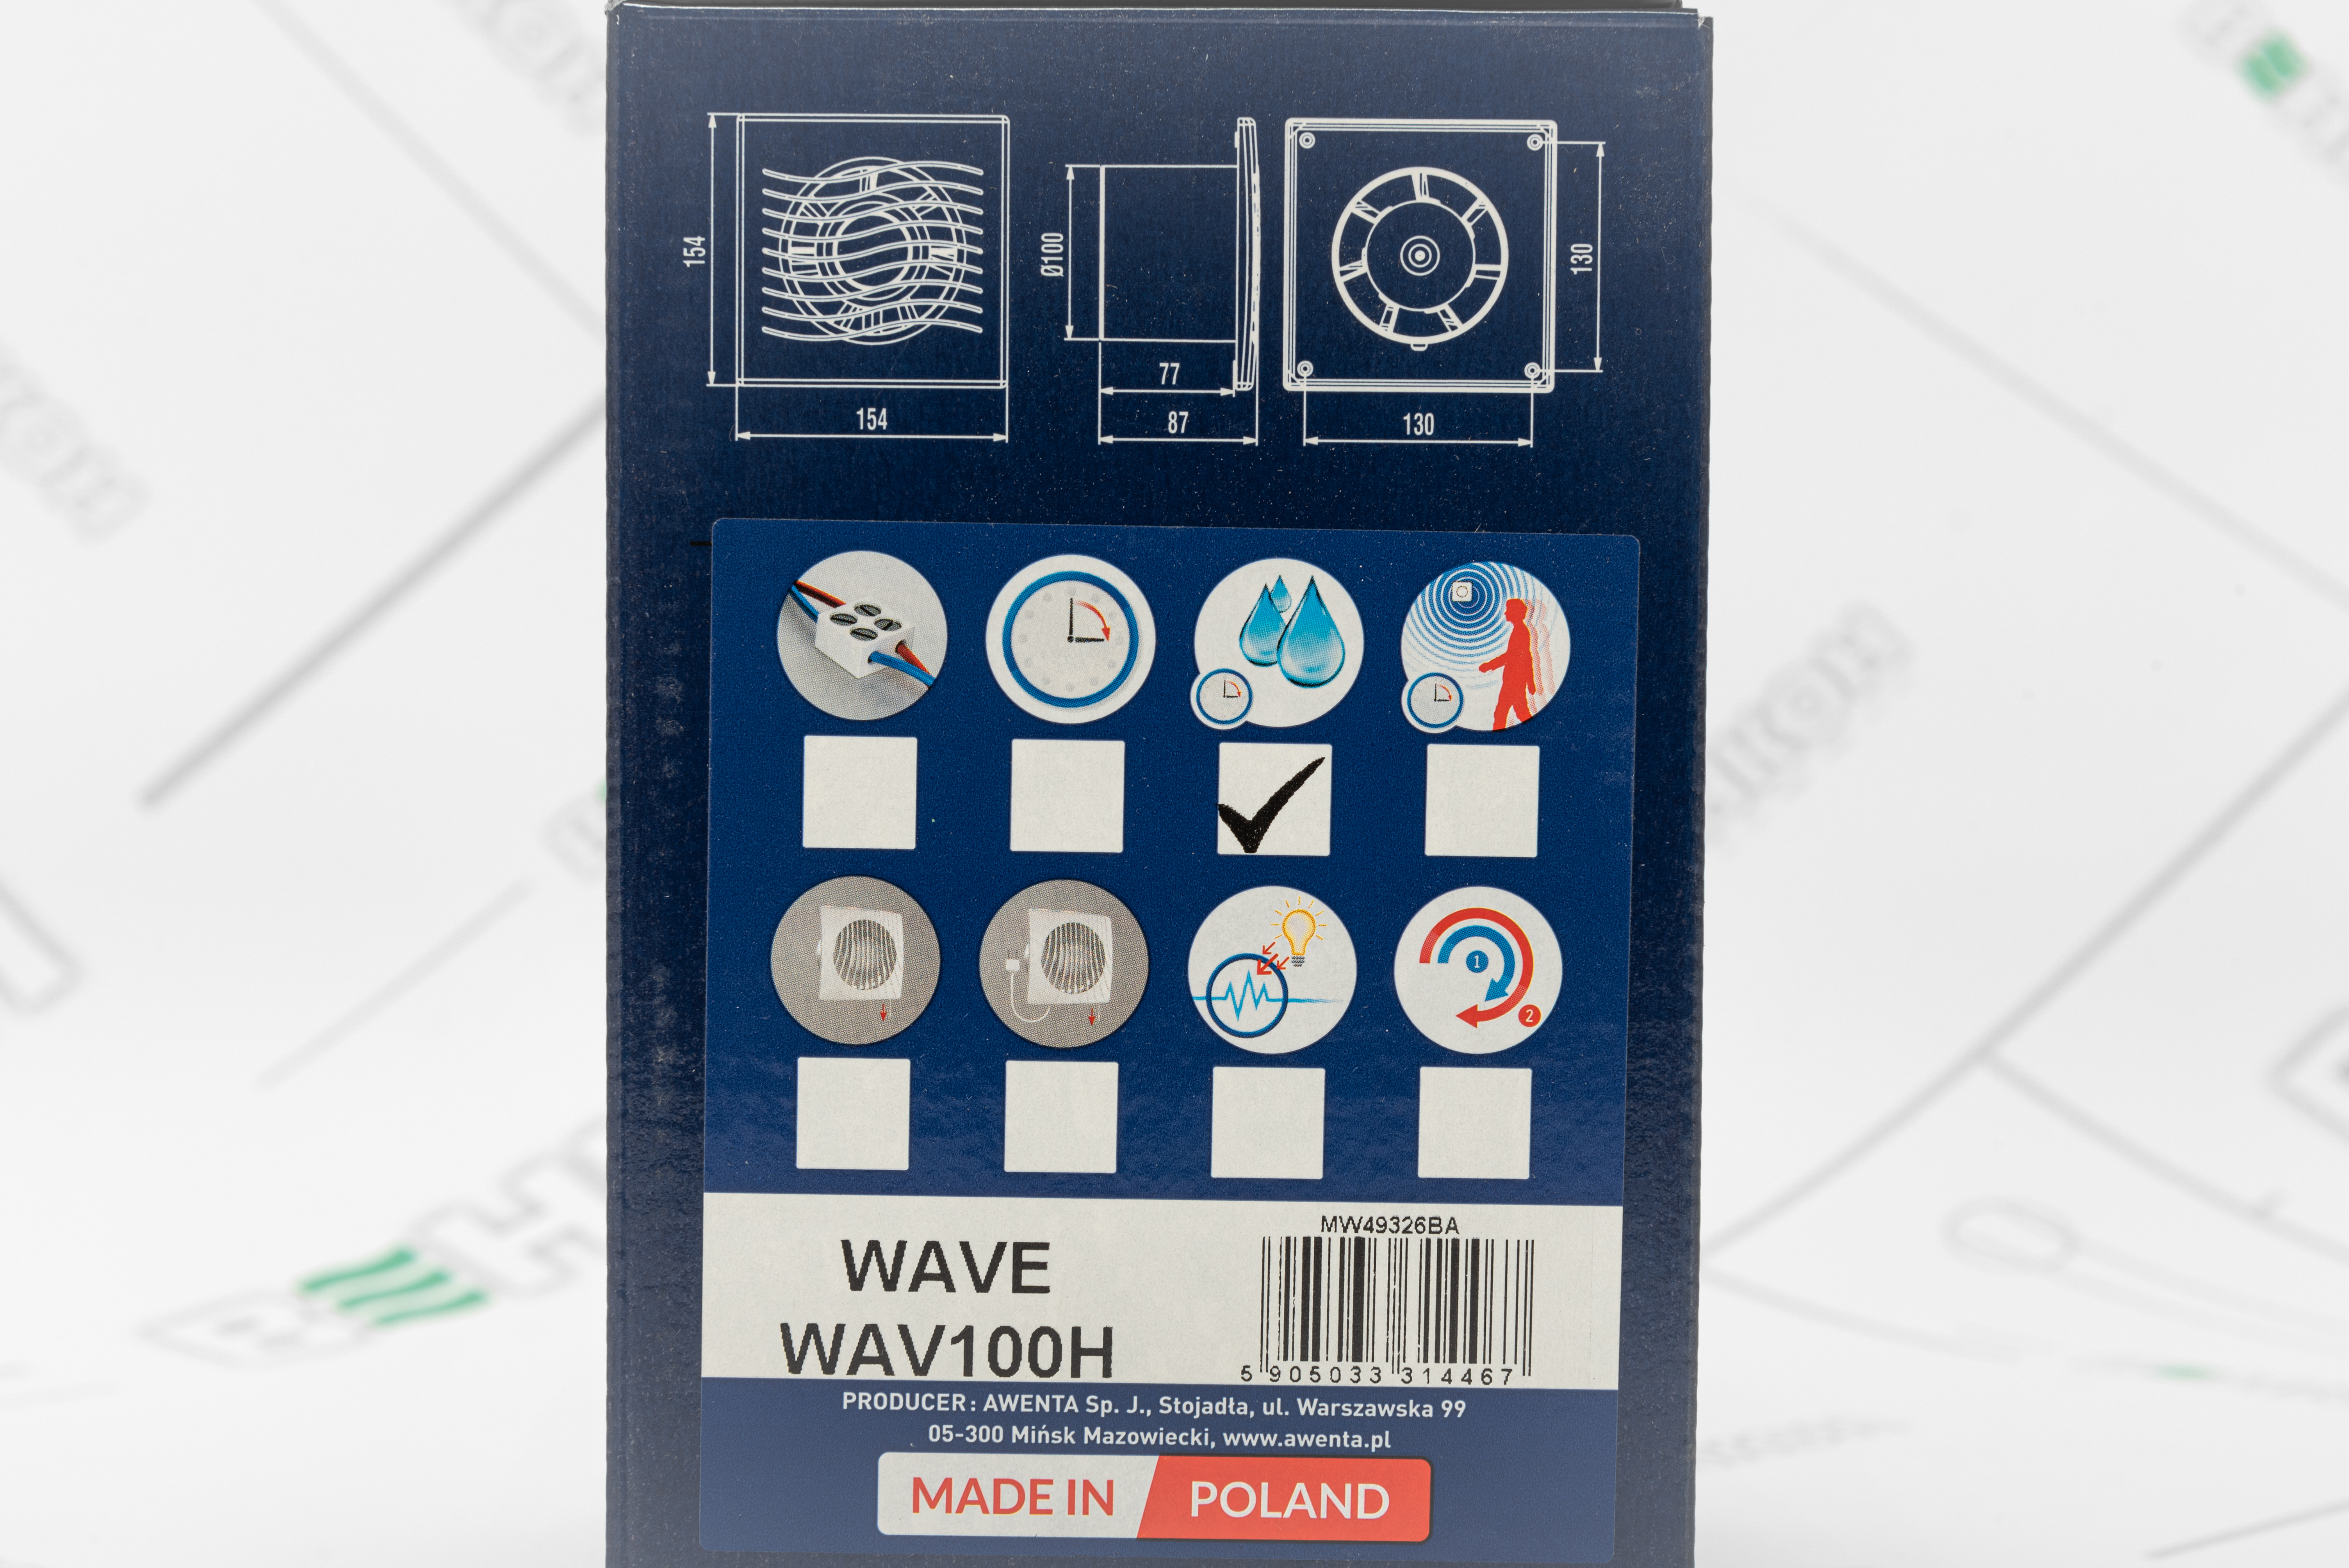 Вытяжной вентилятор Awenta Wave WAV100H внешний вид - фото 9